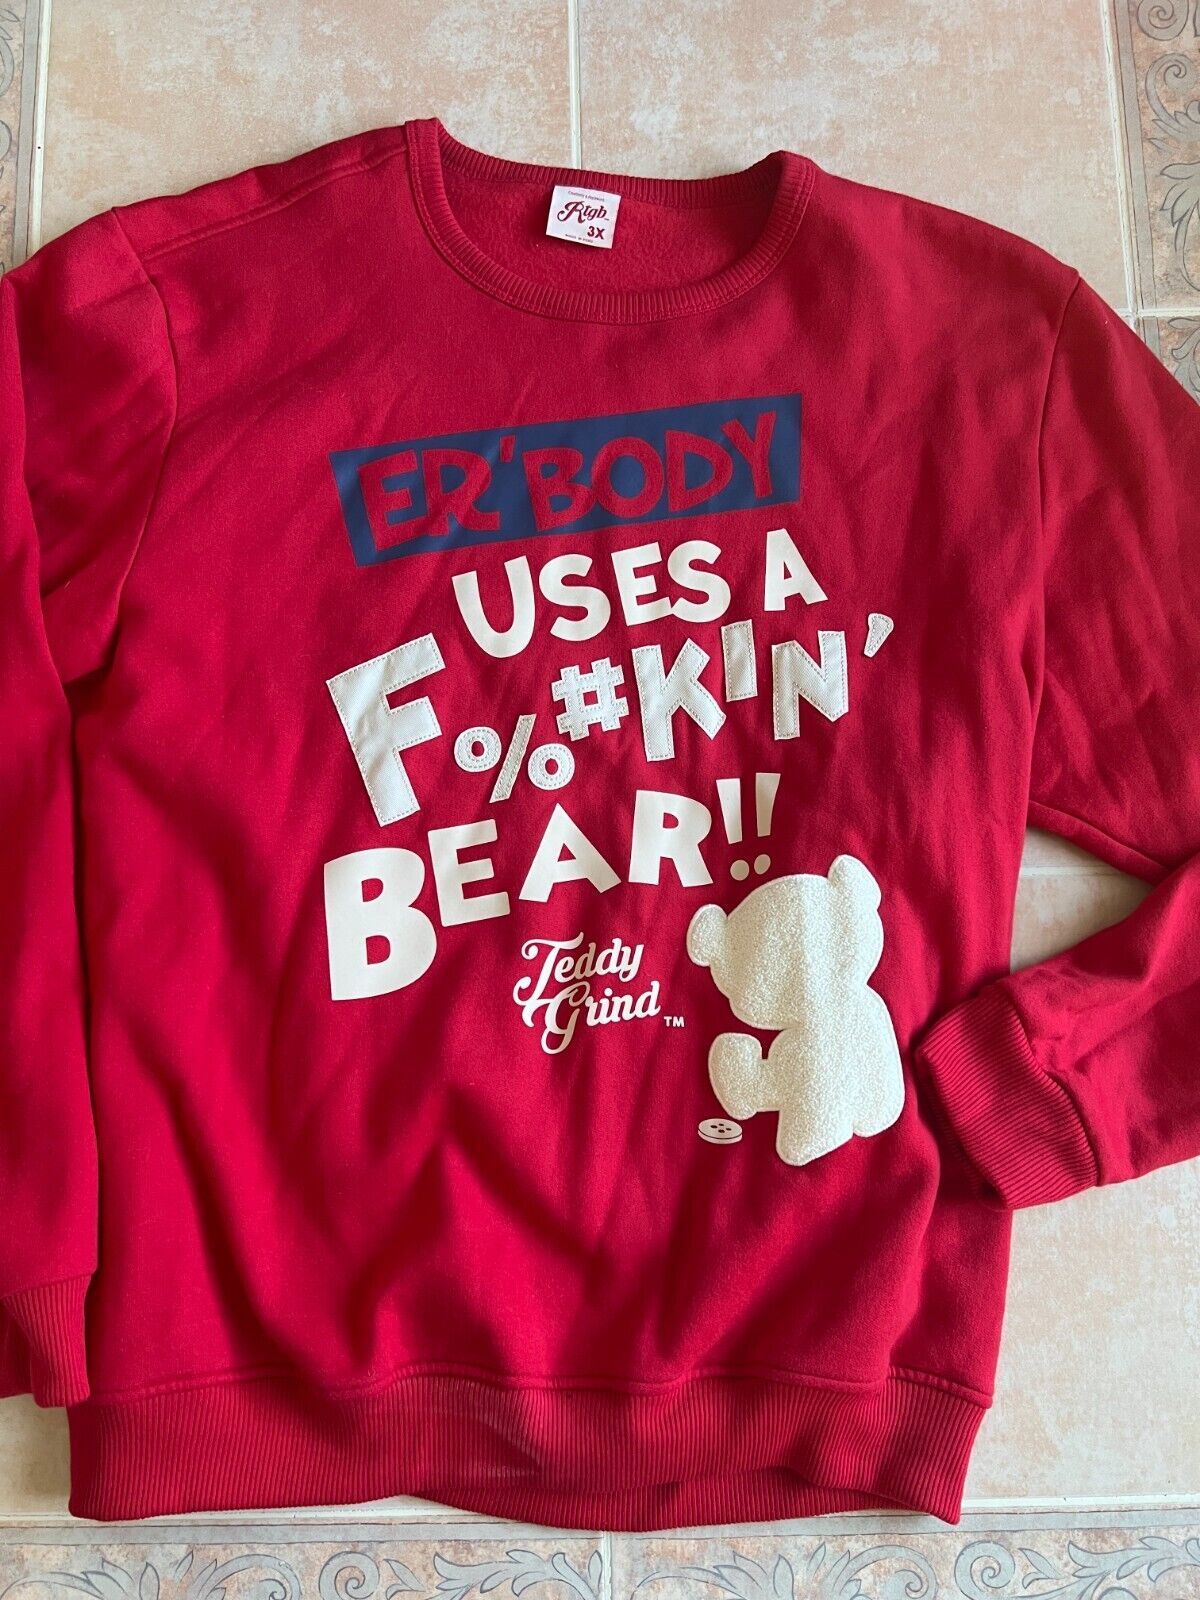 R tgb worn once  ER'BODY  USES A F%#kin' BEAR !! Teddy  Gund sweatshirt  sz 3X